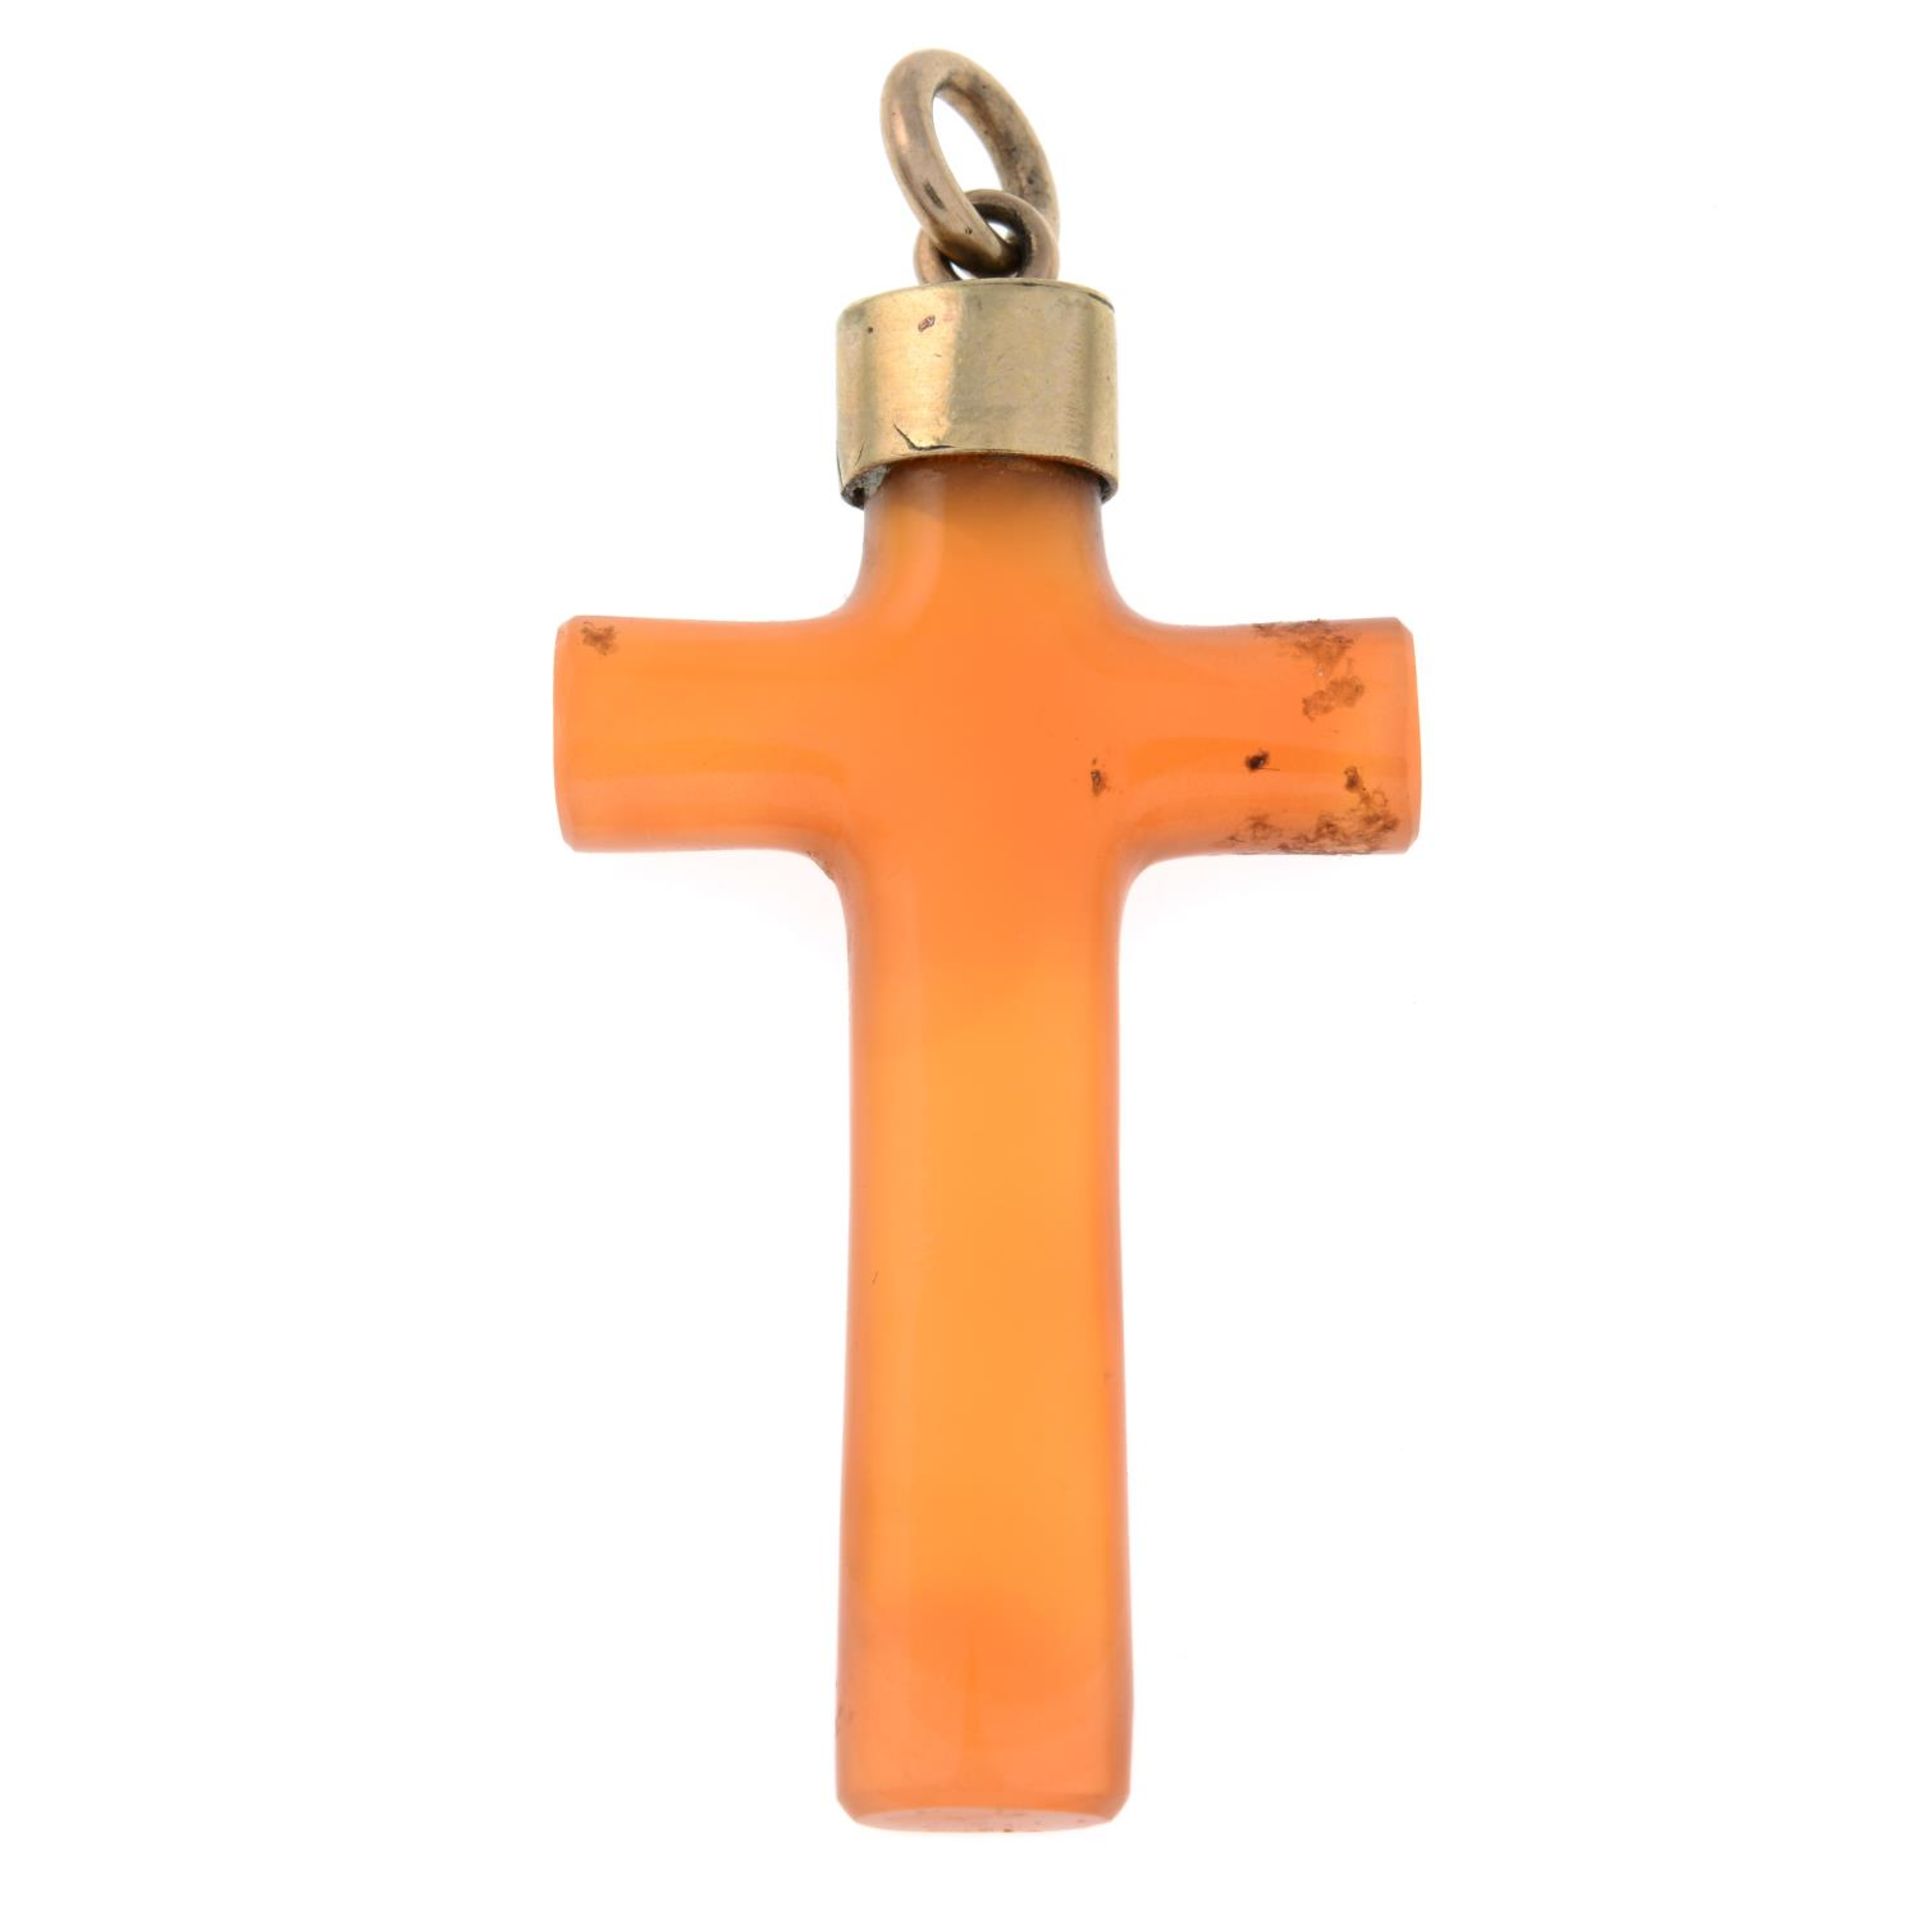 An agate cross pendant.Length 4.6cms.